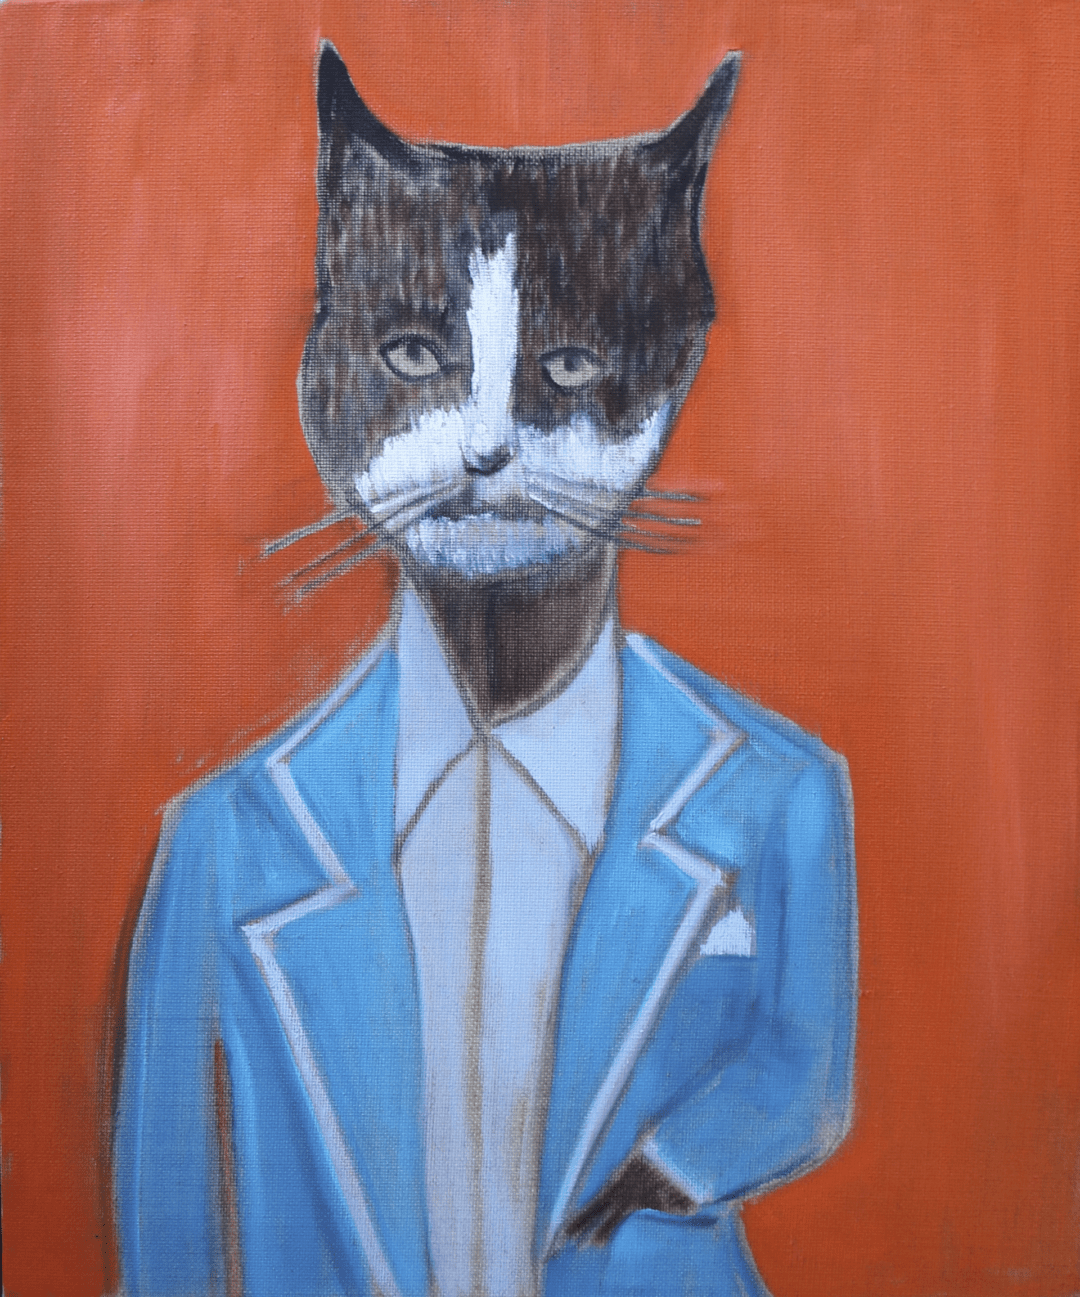 Débonnaire/Dapper Cat, huile sur toile, 48,5 x 40,5 cm, 2015 © Galerie Pixi-Michael Lindsay-Hogg